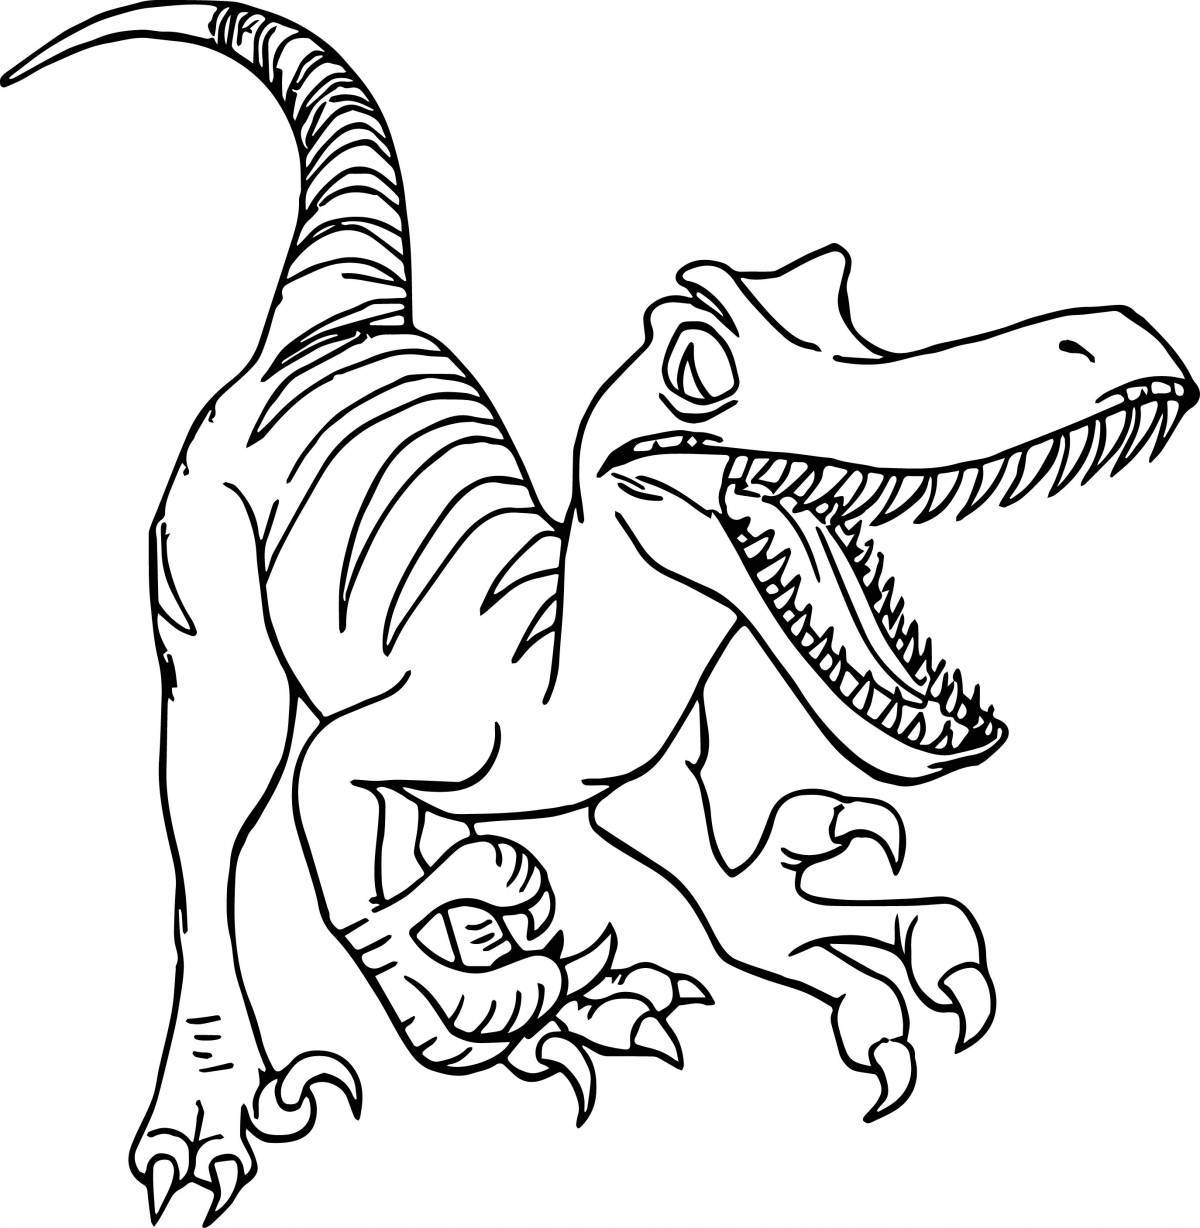 Юмористическая раскраска динозавр